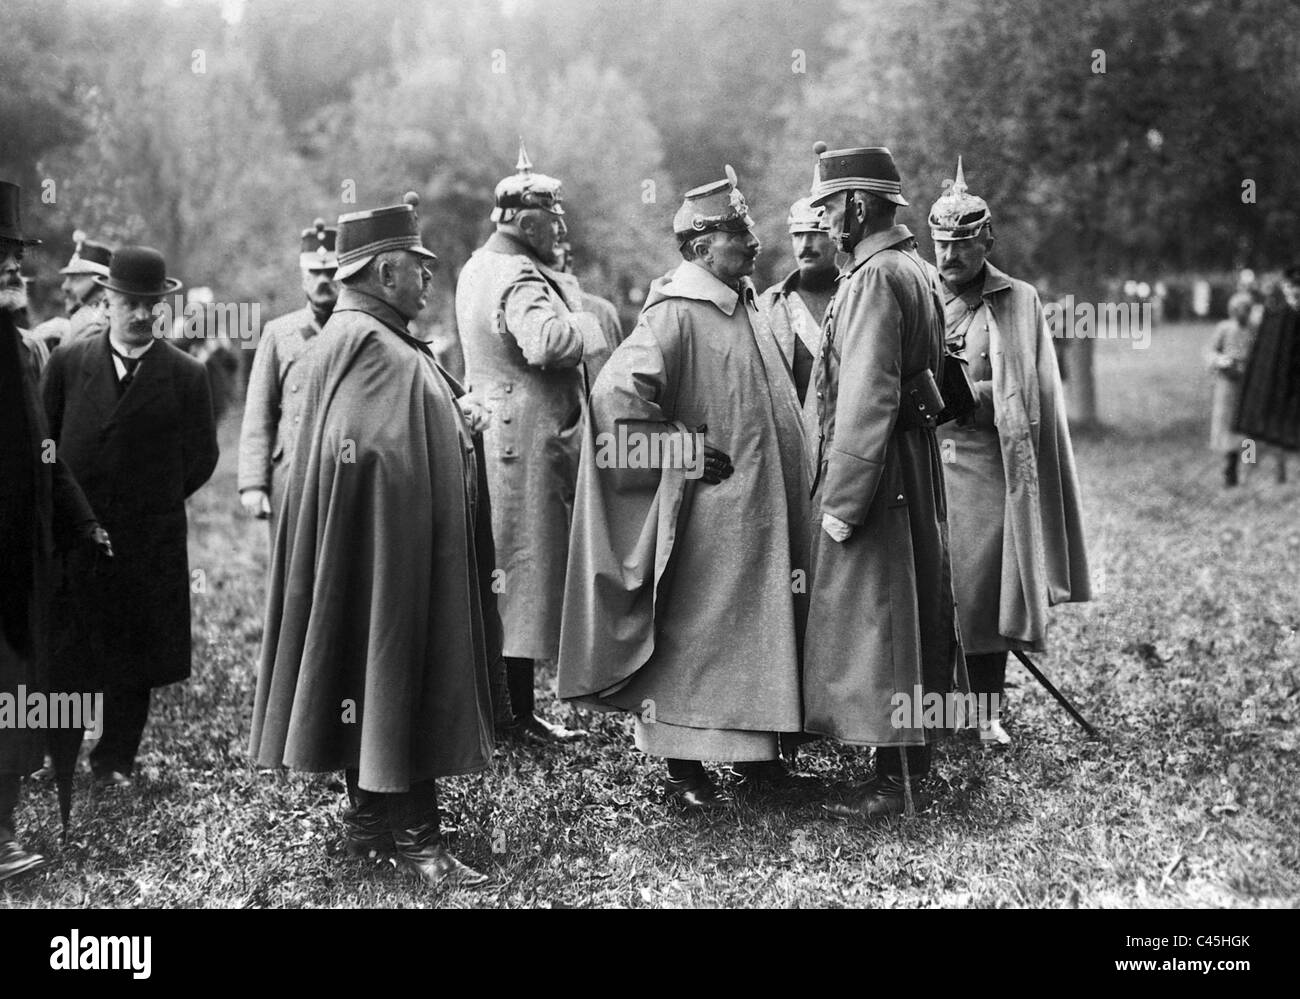 Emperor Wilhelm II, Ulrich Wille, Helmuth von Moltke and Theophil Sprecher von Bernegg, 1912 Stock Photo